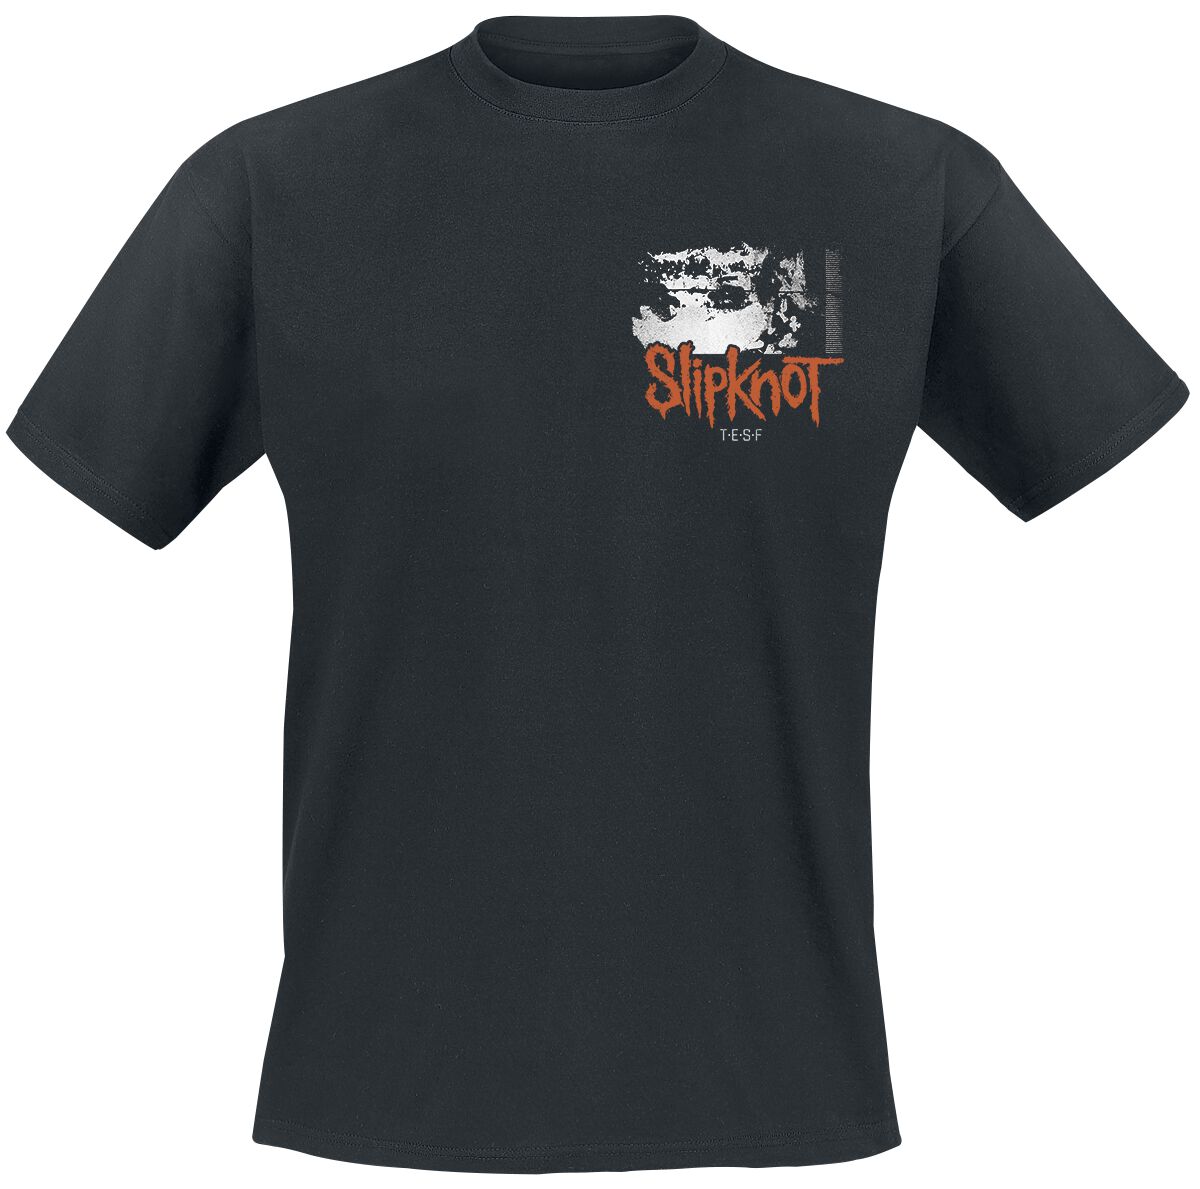 Slipknot T-Shirt - The End, So Far Tracklist - S bis 3XL - für Männer - Größe M - schwarz  - Lizenziertes Merchandise!